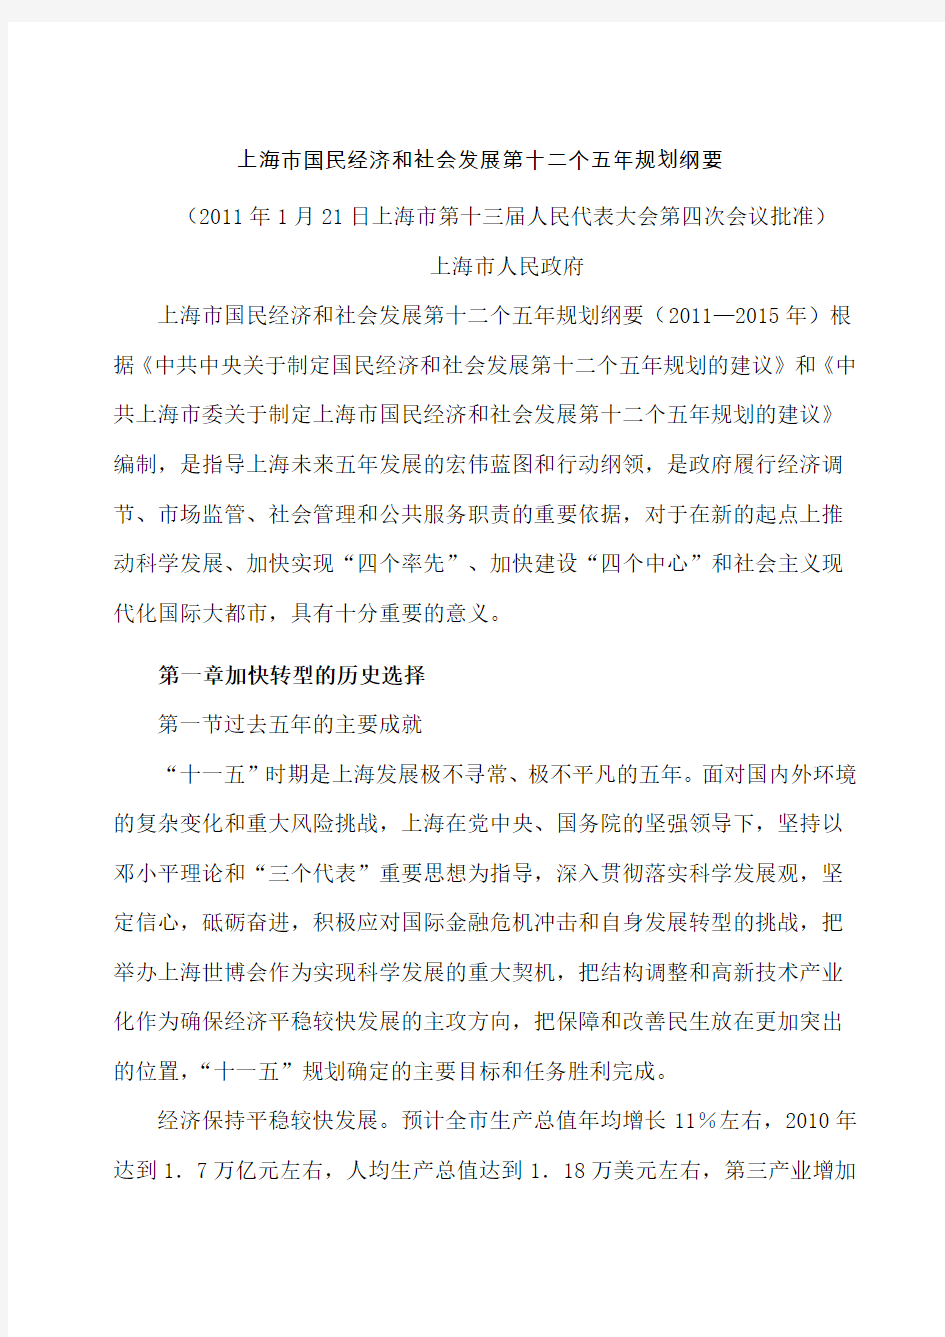 上海市国民经济和社会发展第十二个五年规划纲要